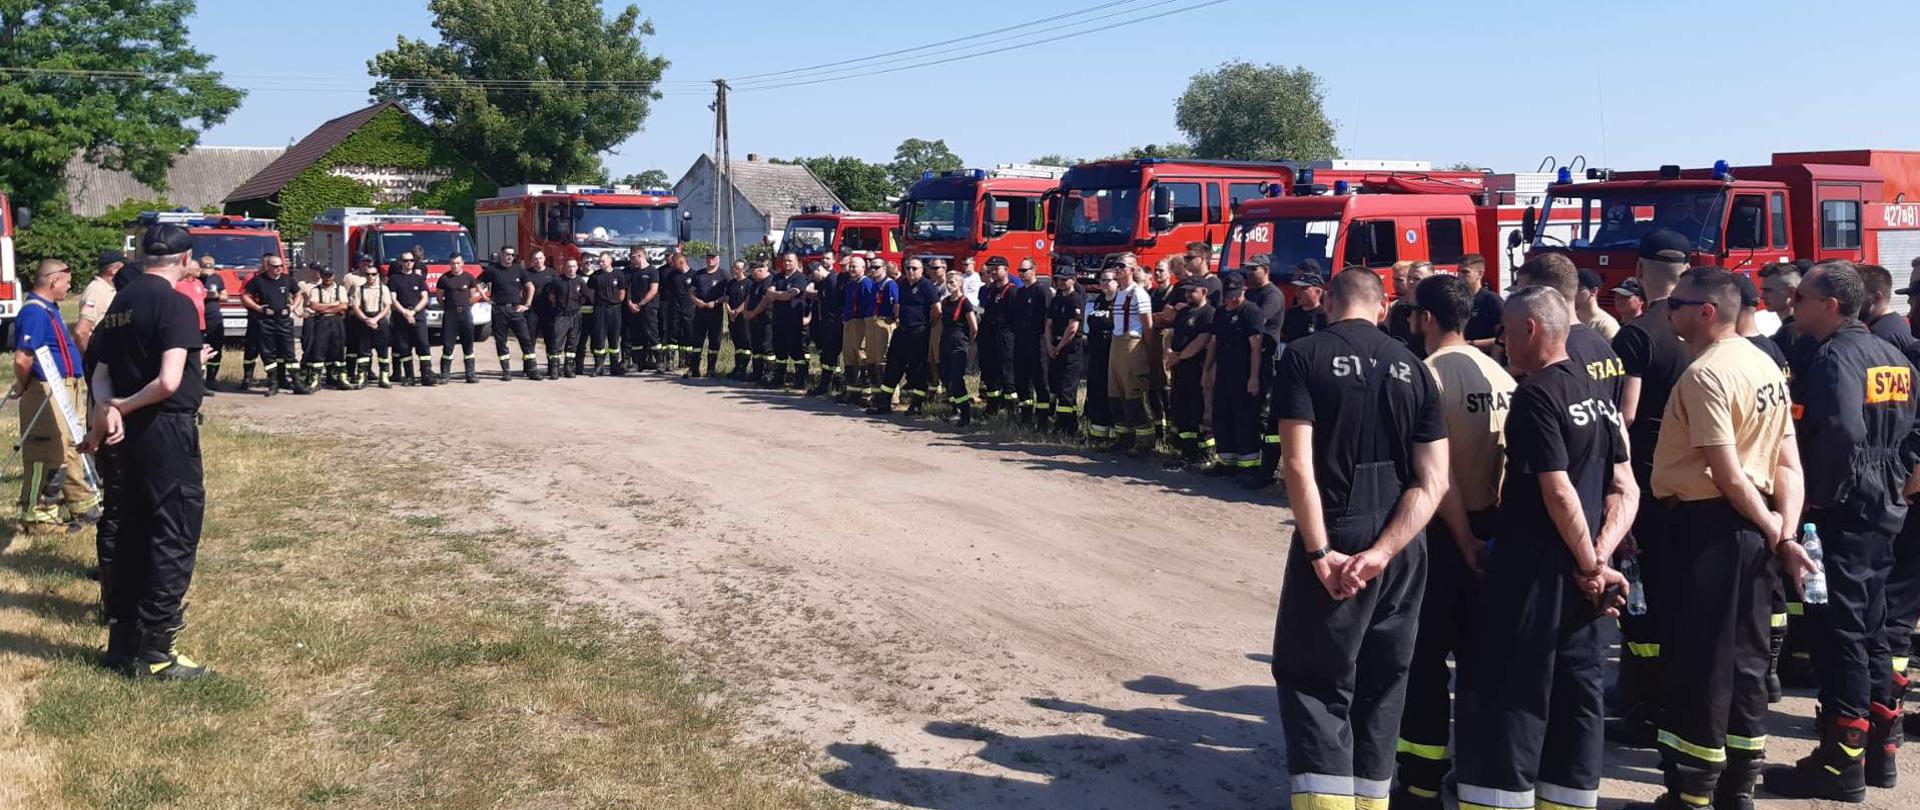 Zdjęcie grupowe uczestników ćwiczeń Integracja 2021 - odprawa przed ćwiczeniami. Grupa strażaków w ciemnych ubraniach, w tle czerwone samochody pożarnicze.